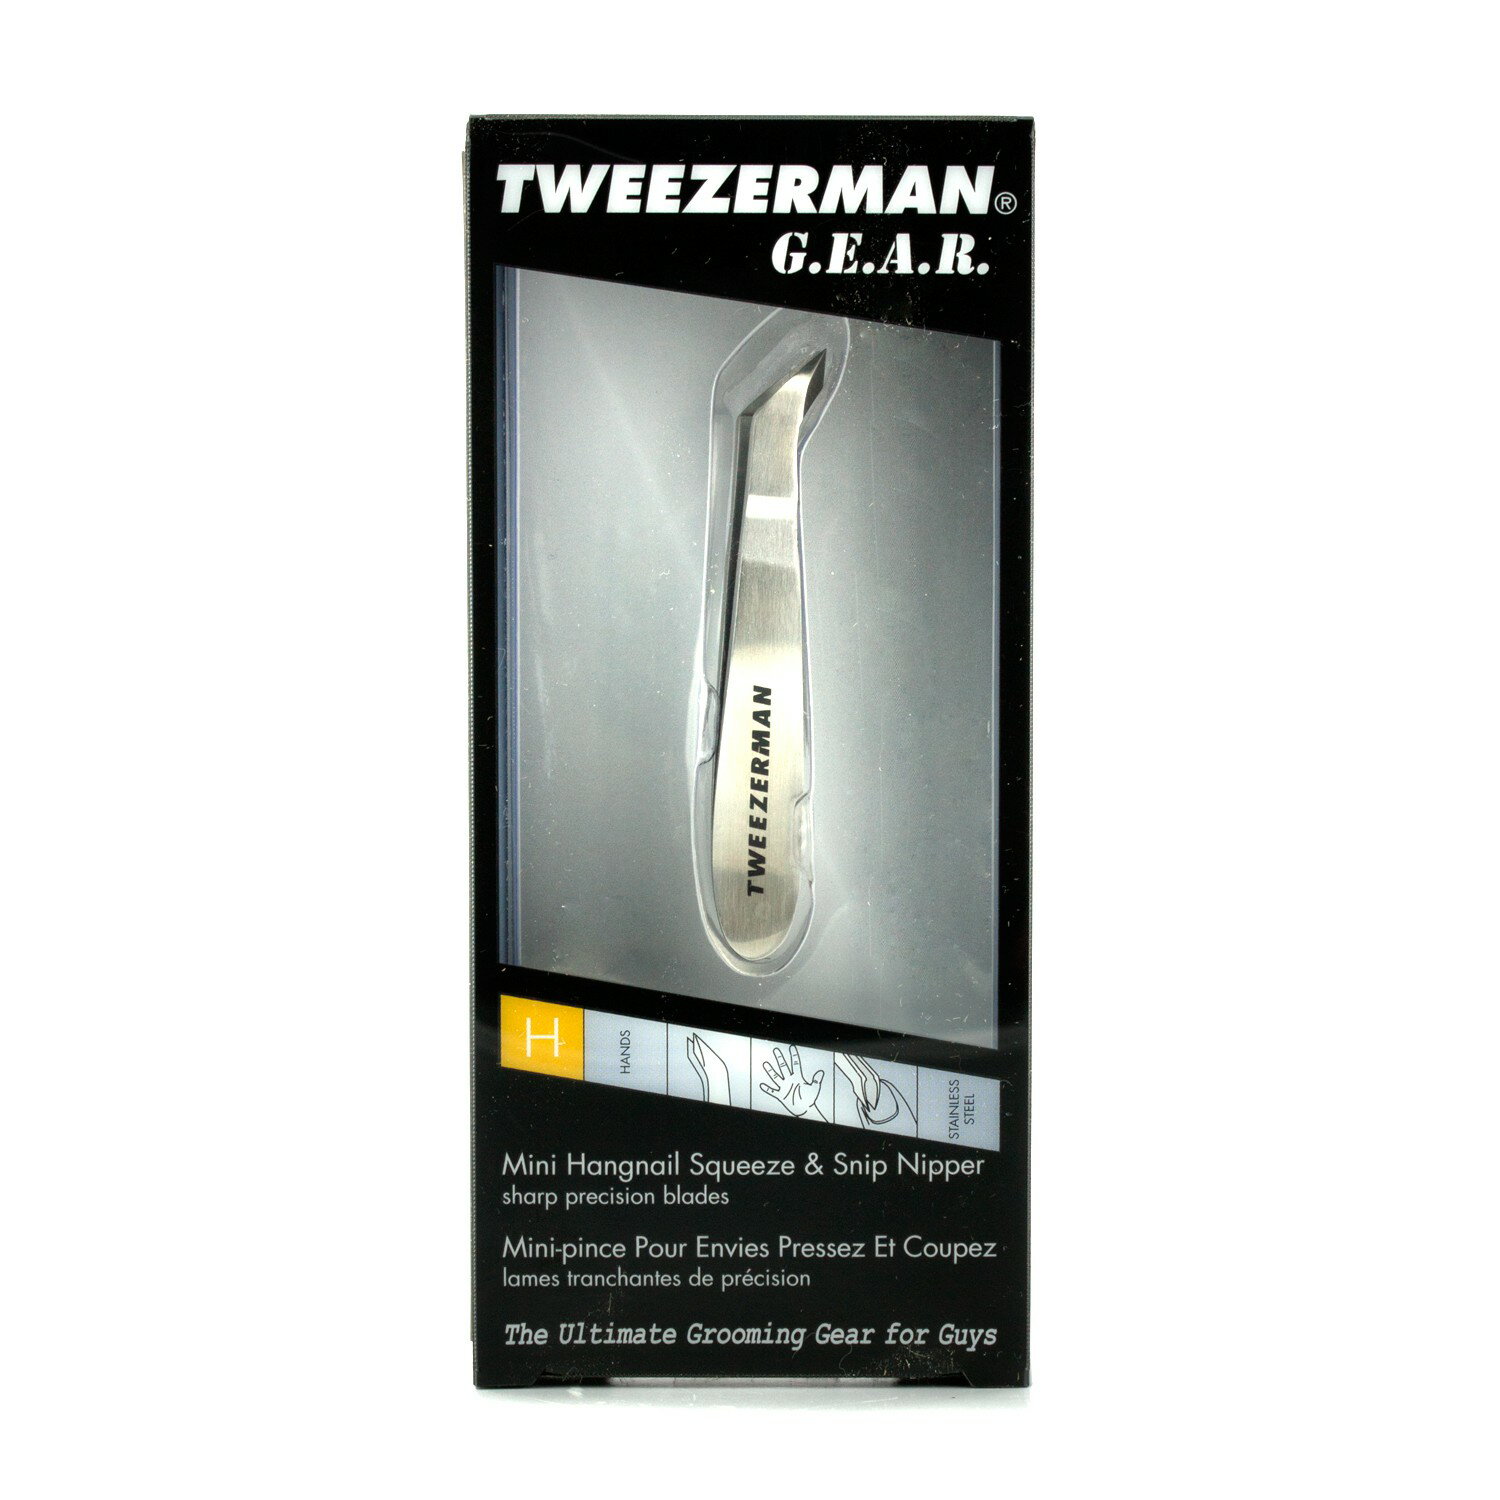 微之魅 Tweezerman - 男士倒刺指甲刀 Mini Hangnail Squeeze & Snip Nipper